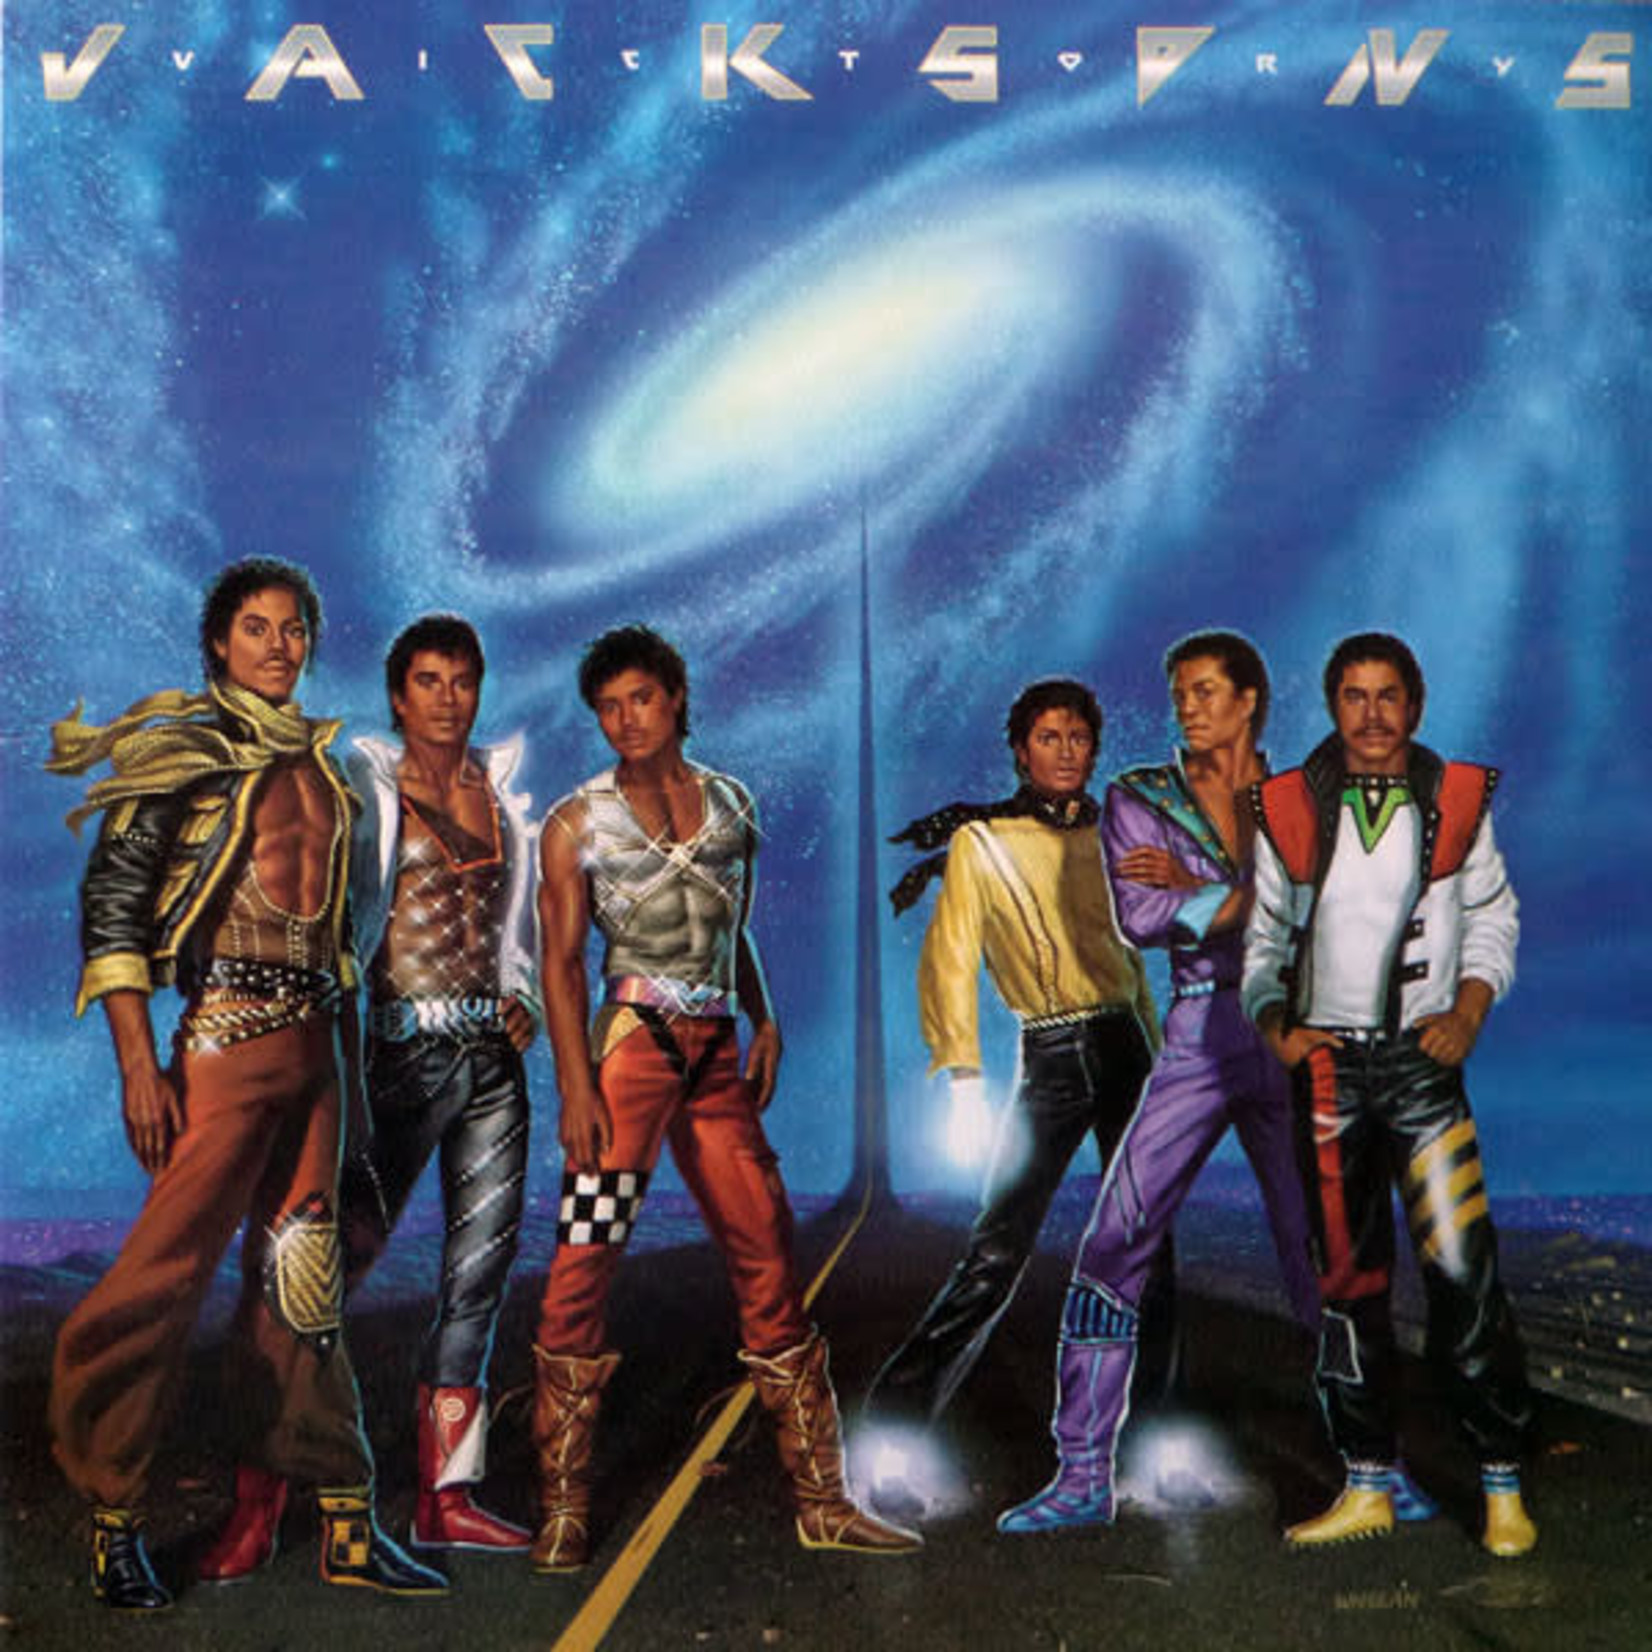 [Vintage] Jacksons - Victory